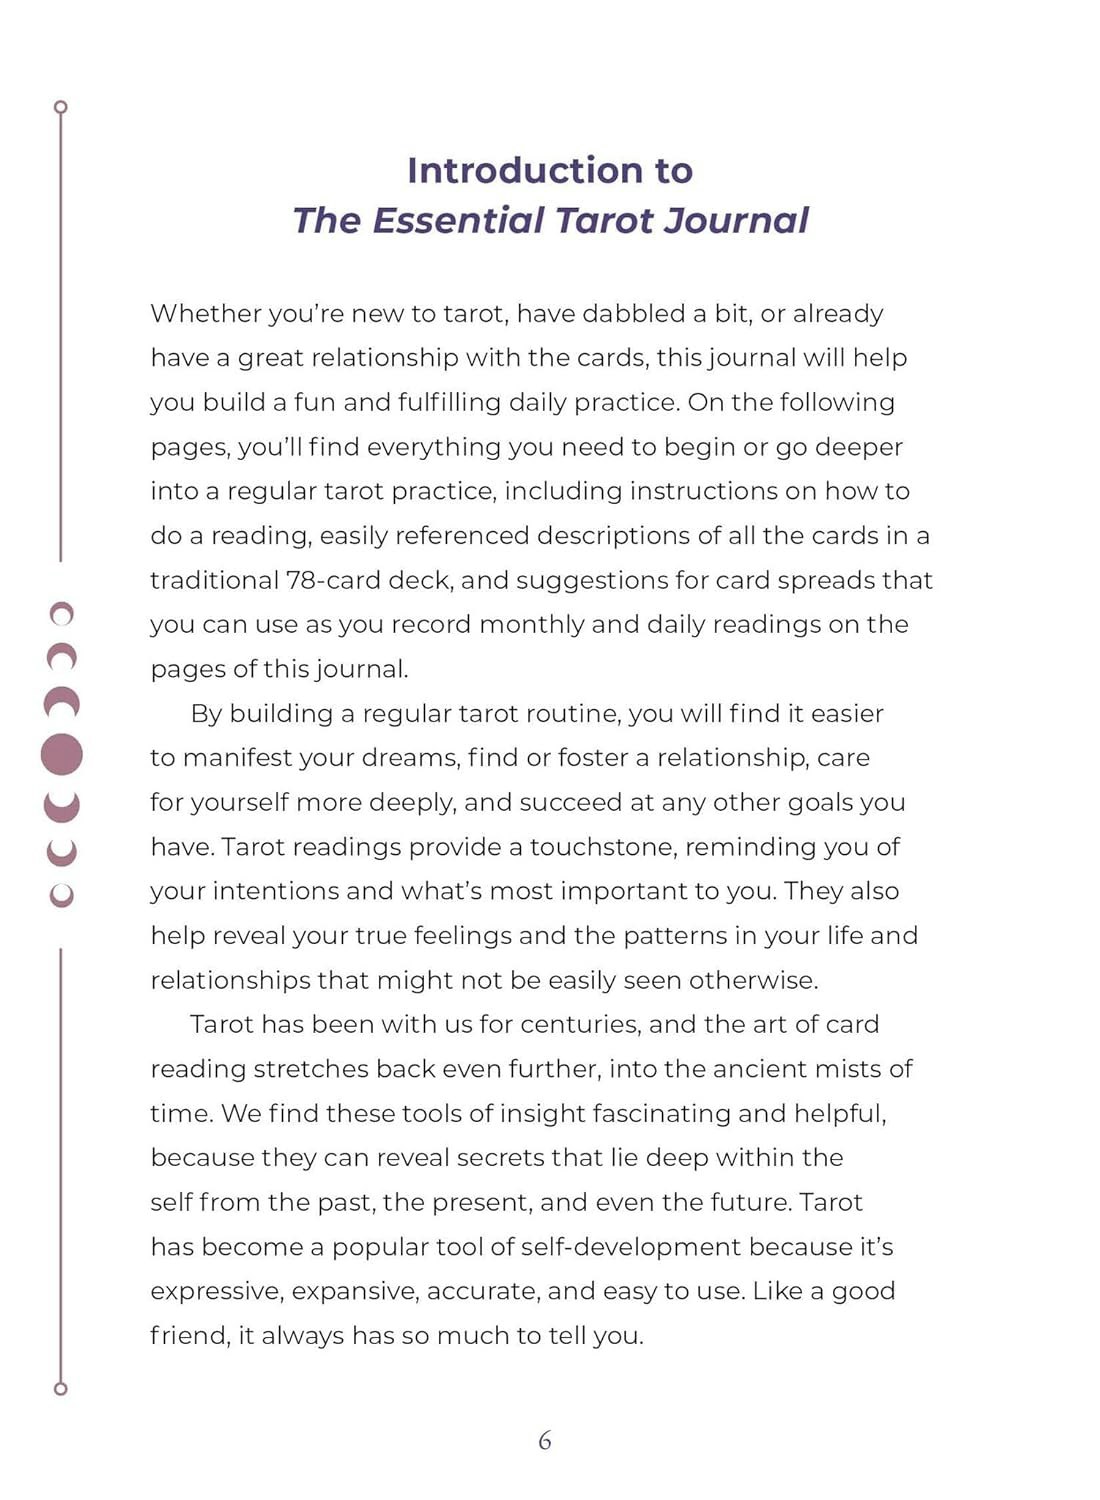 The Essential tarot journal